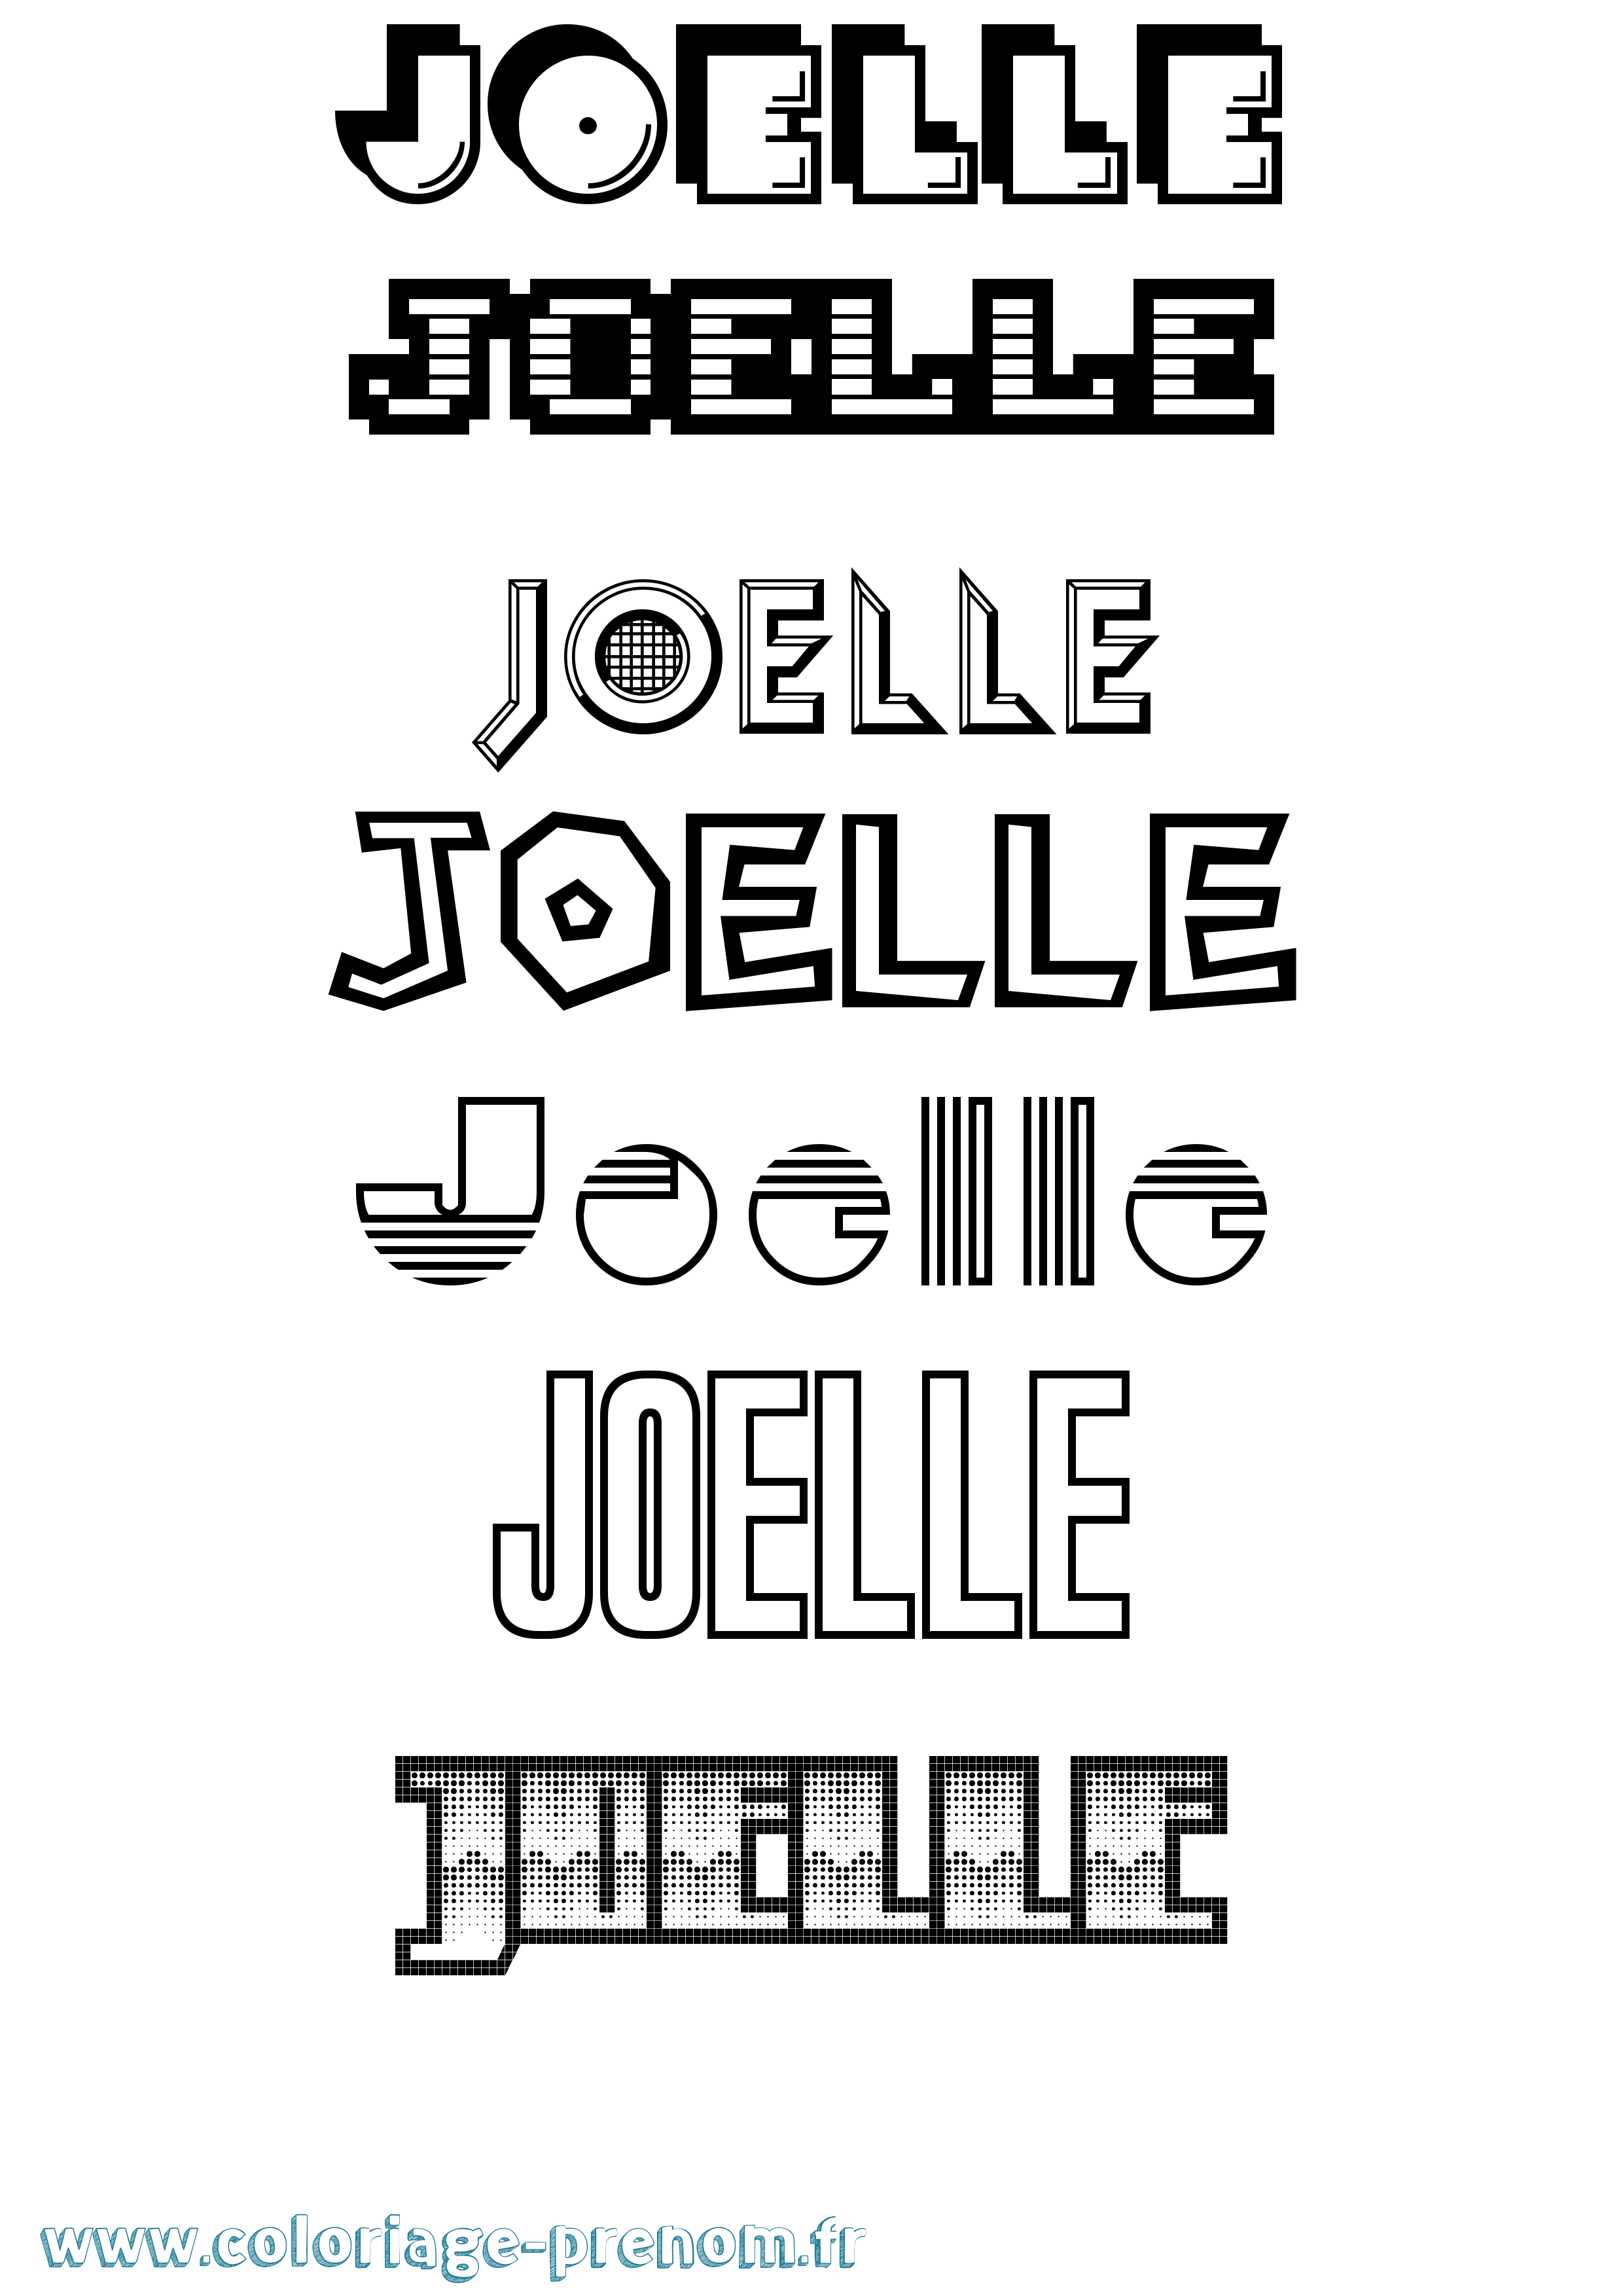 Coloriage prénom Joelle Jeux Vidéos